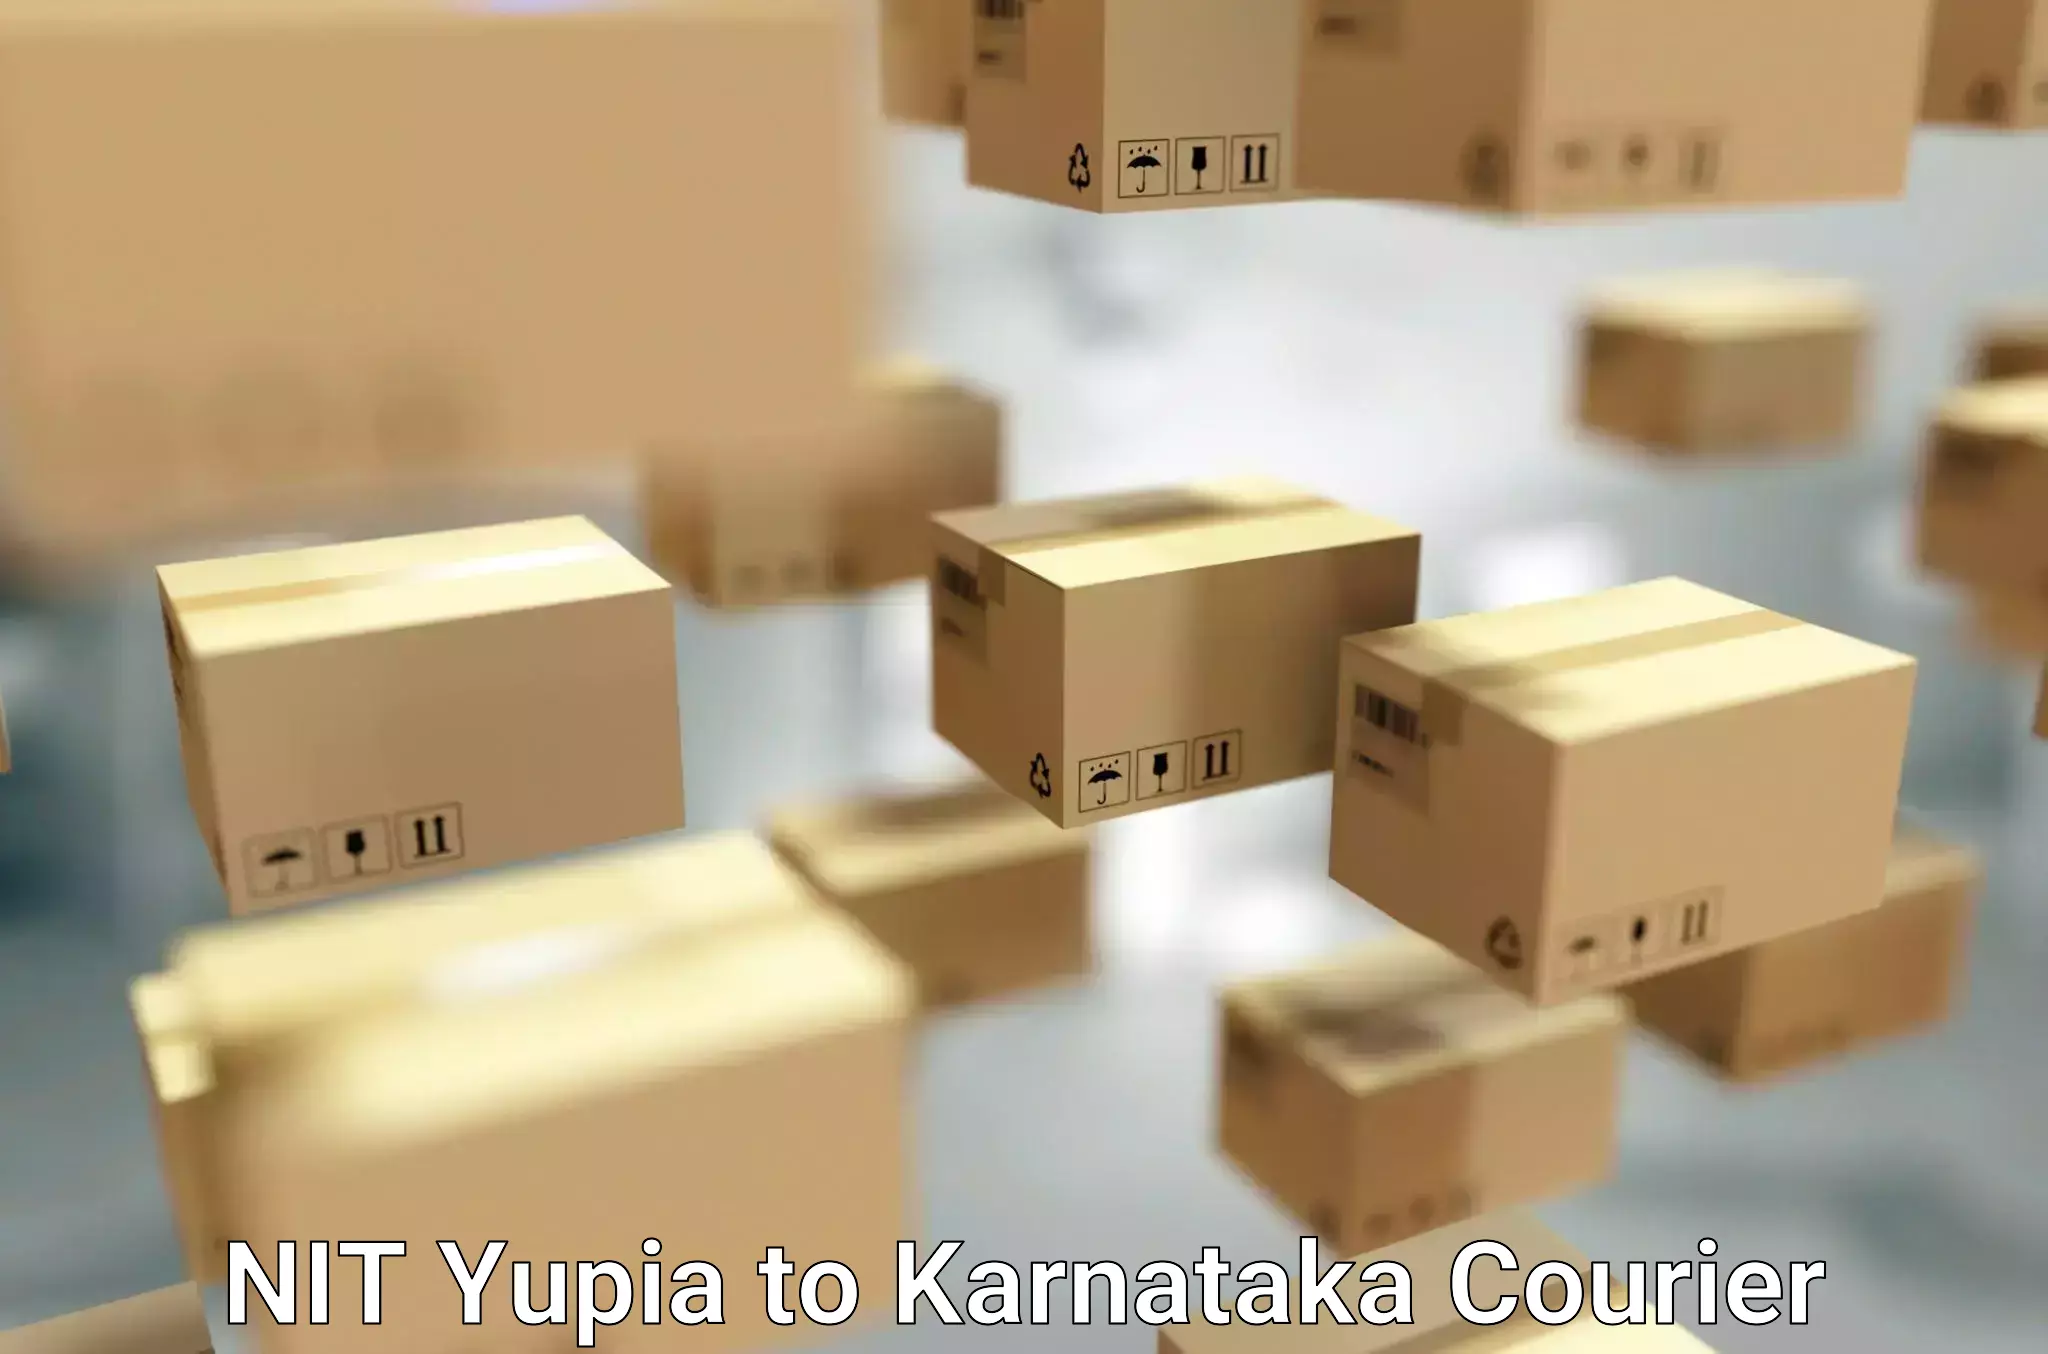 Seamless moving process NIT Yupia to Karnataka